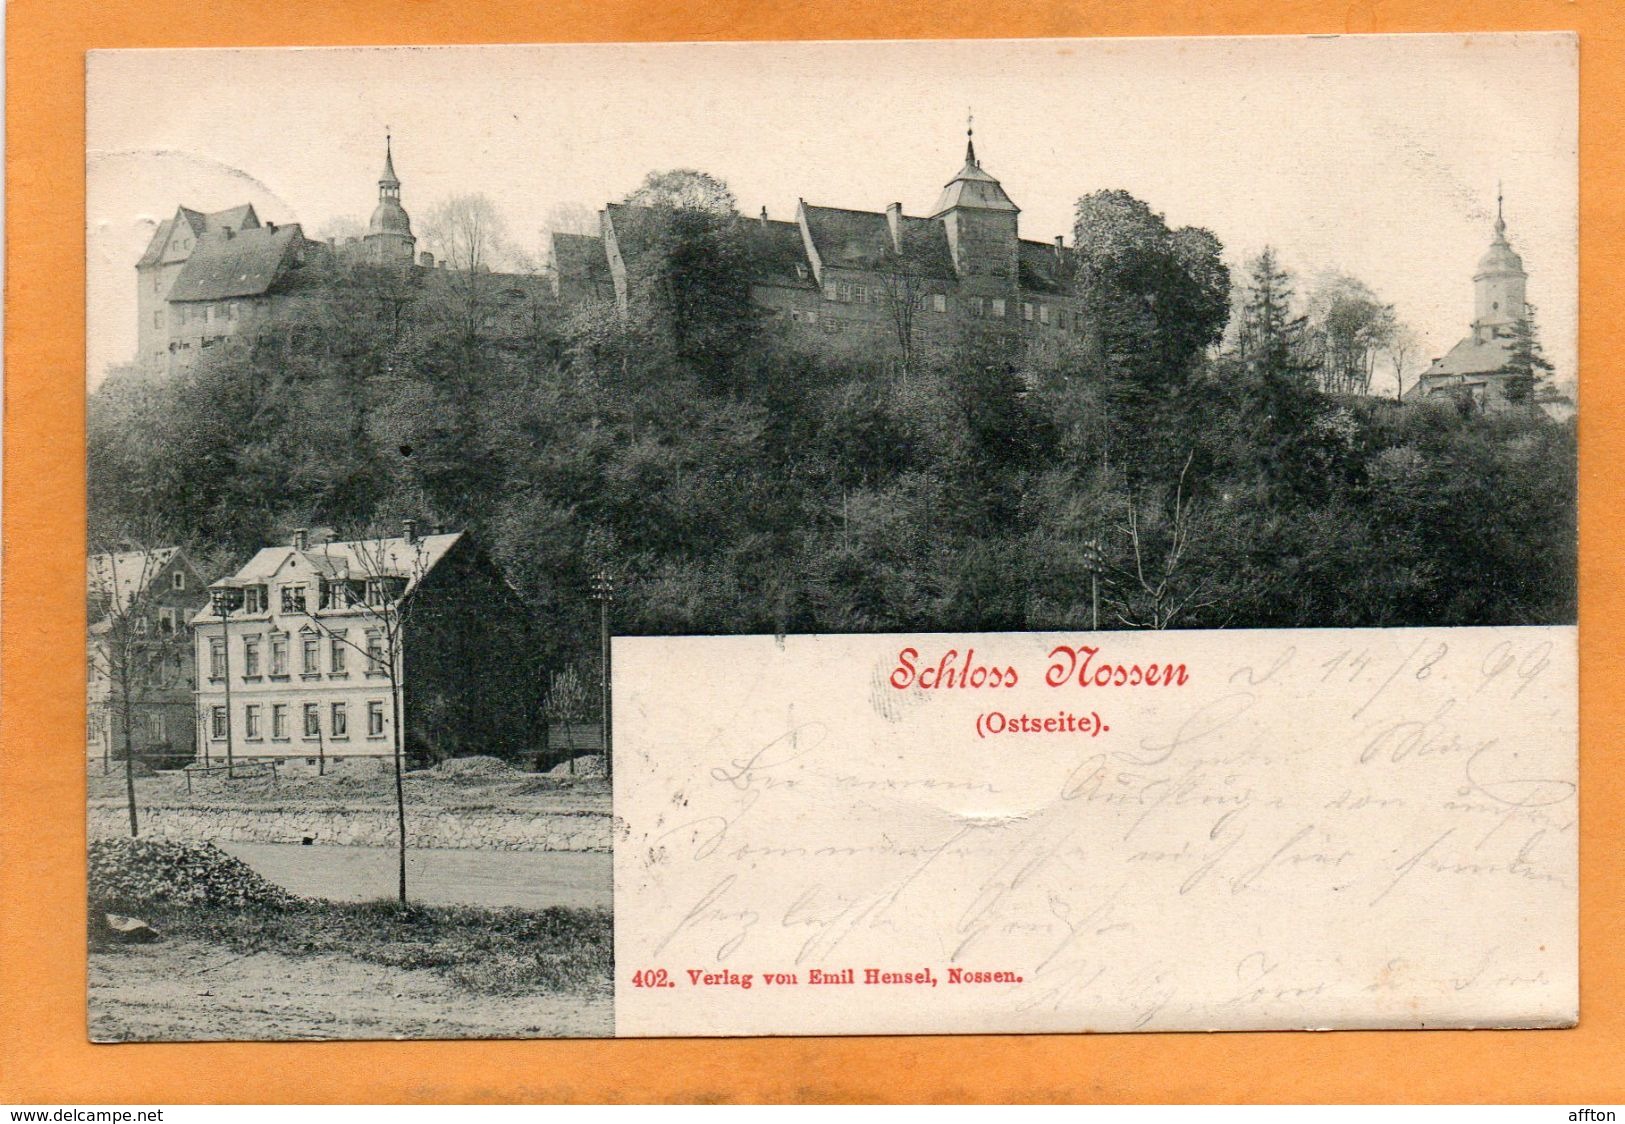 Nossen Germany 1898 Postcard - Nossen